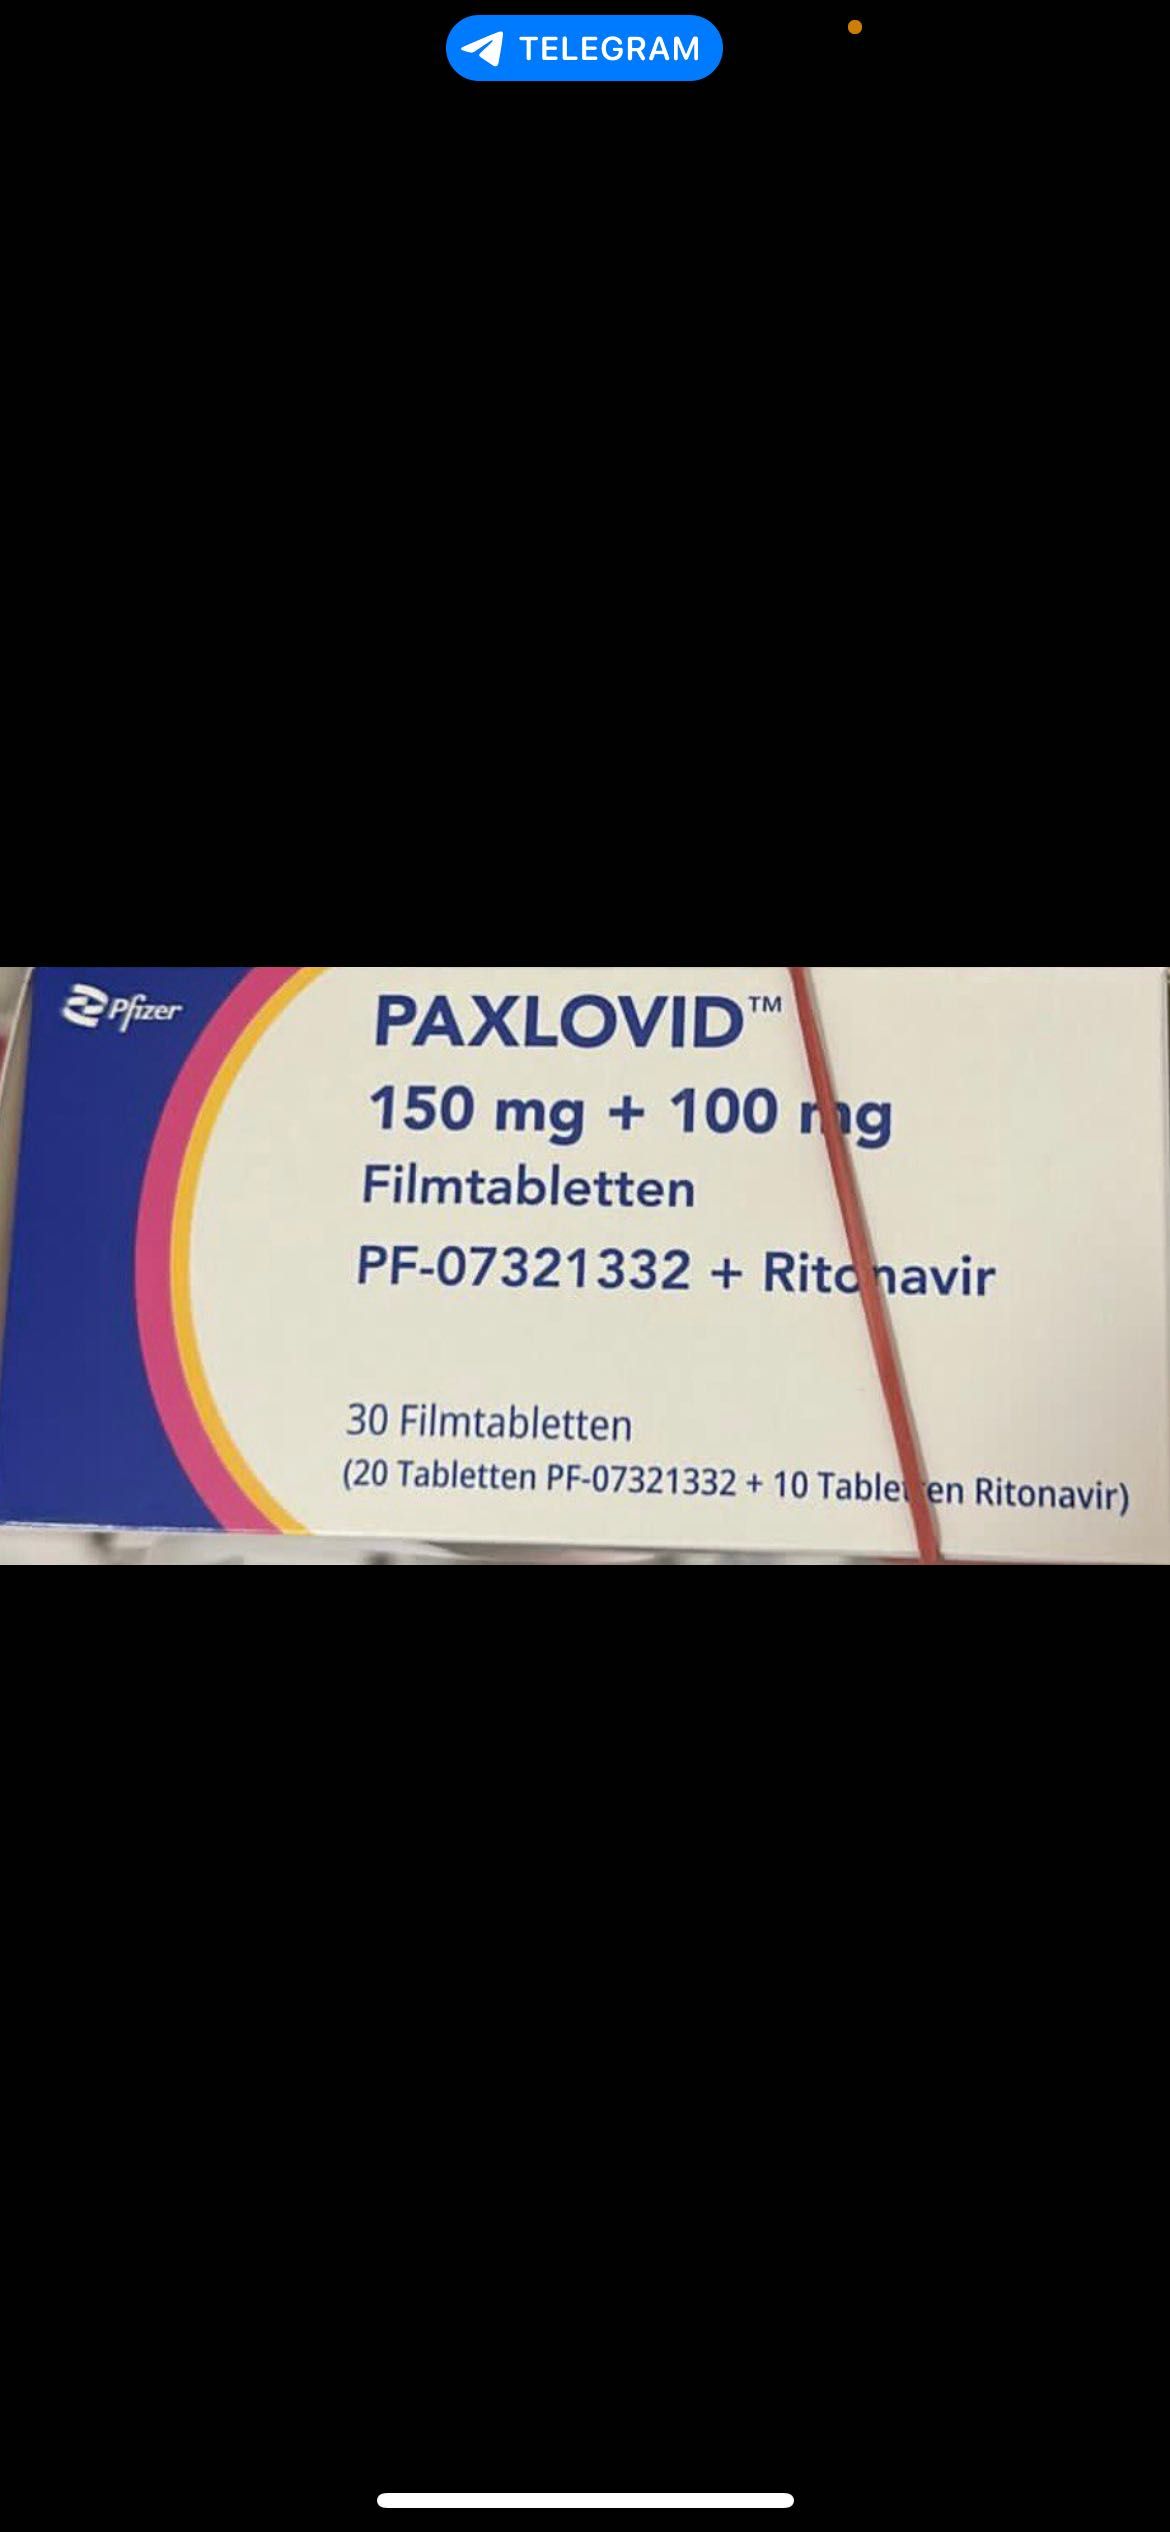 PAXLOVID™ ліки від ковіду